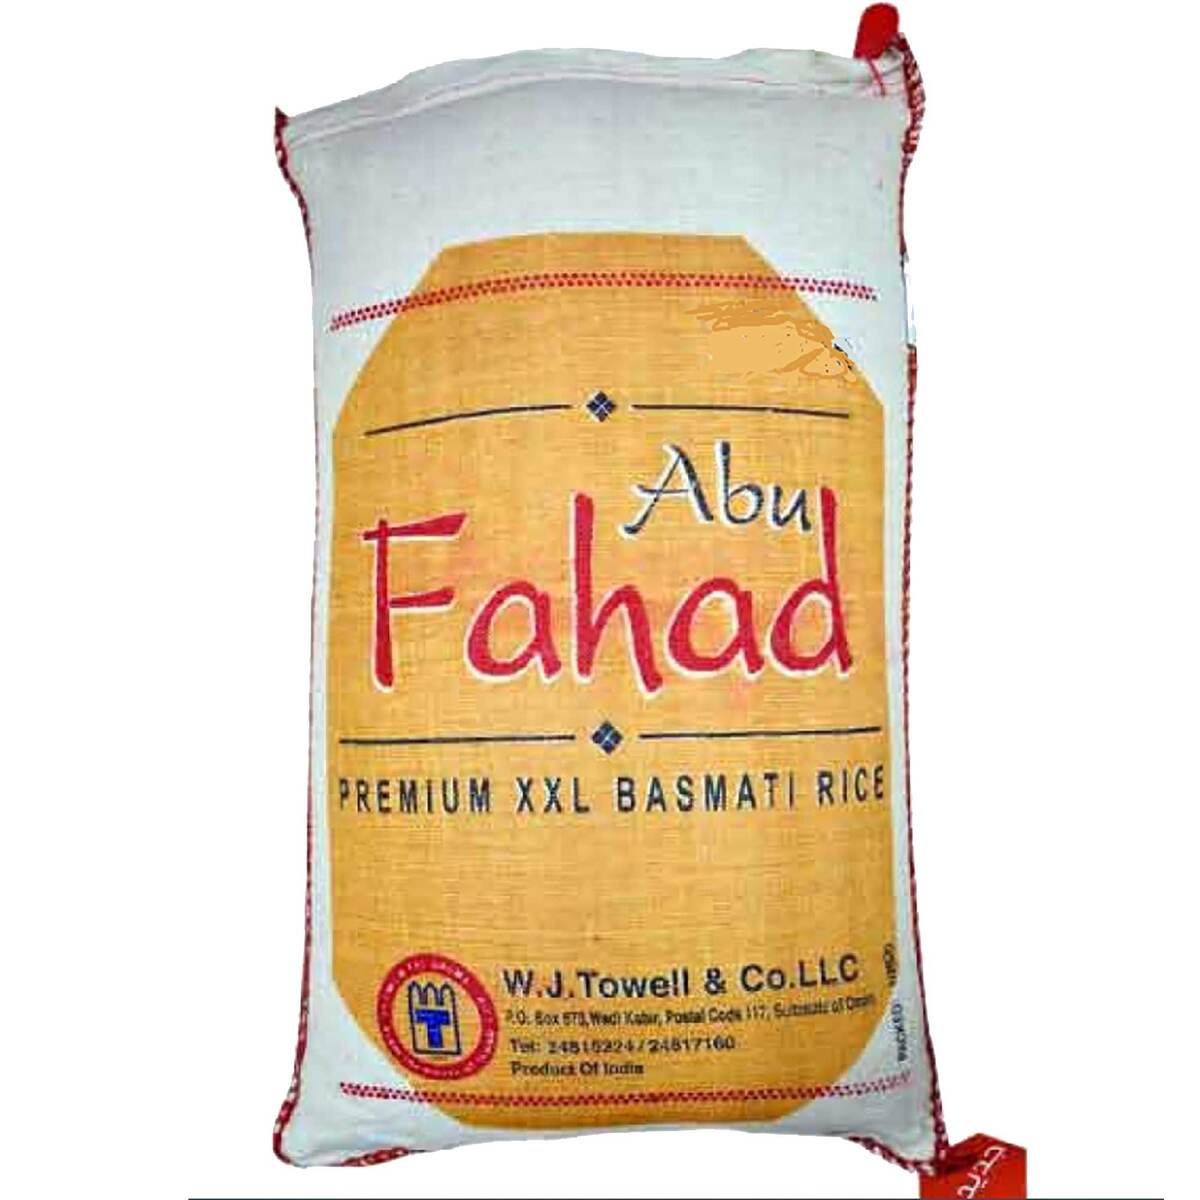 Abu Fahad Basmati Rice 35kg